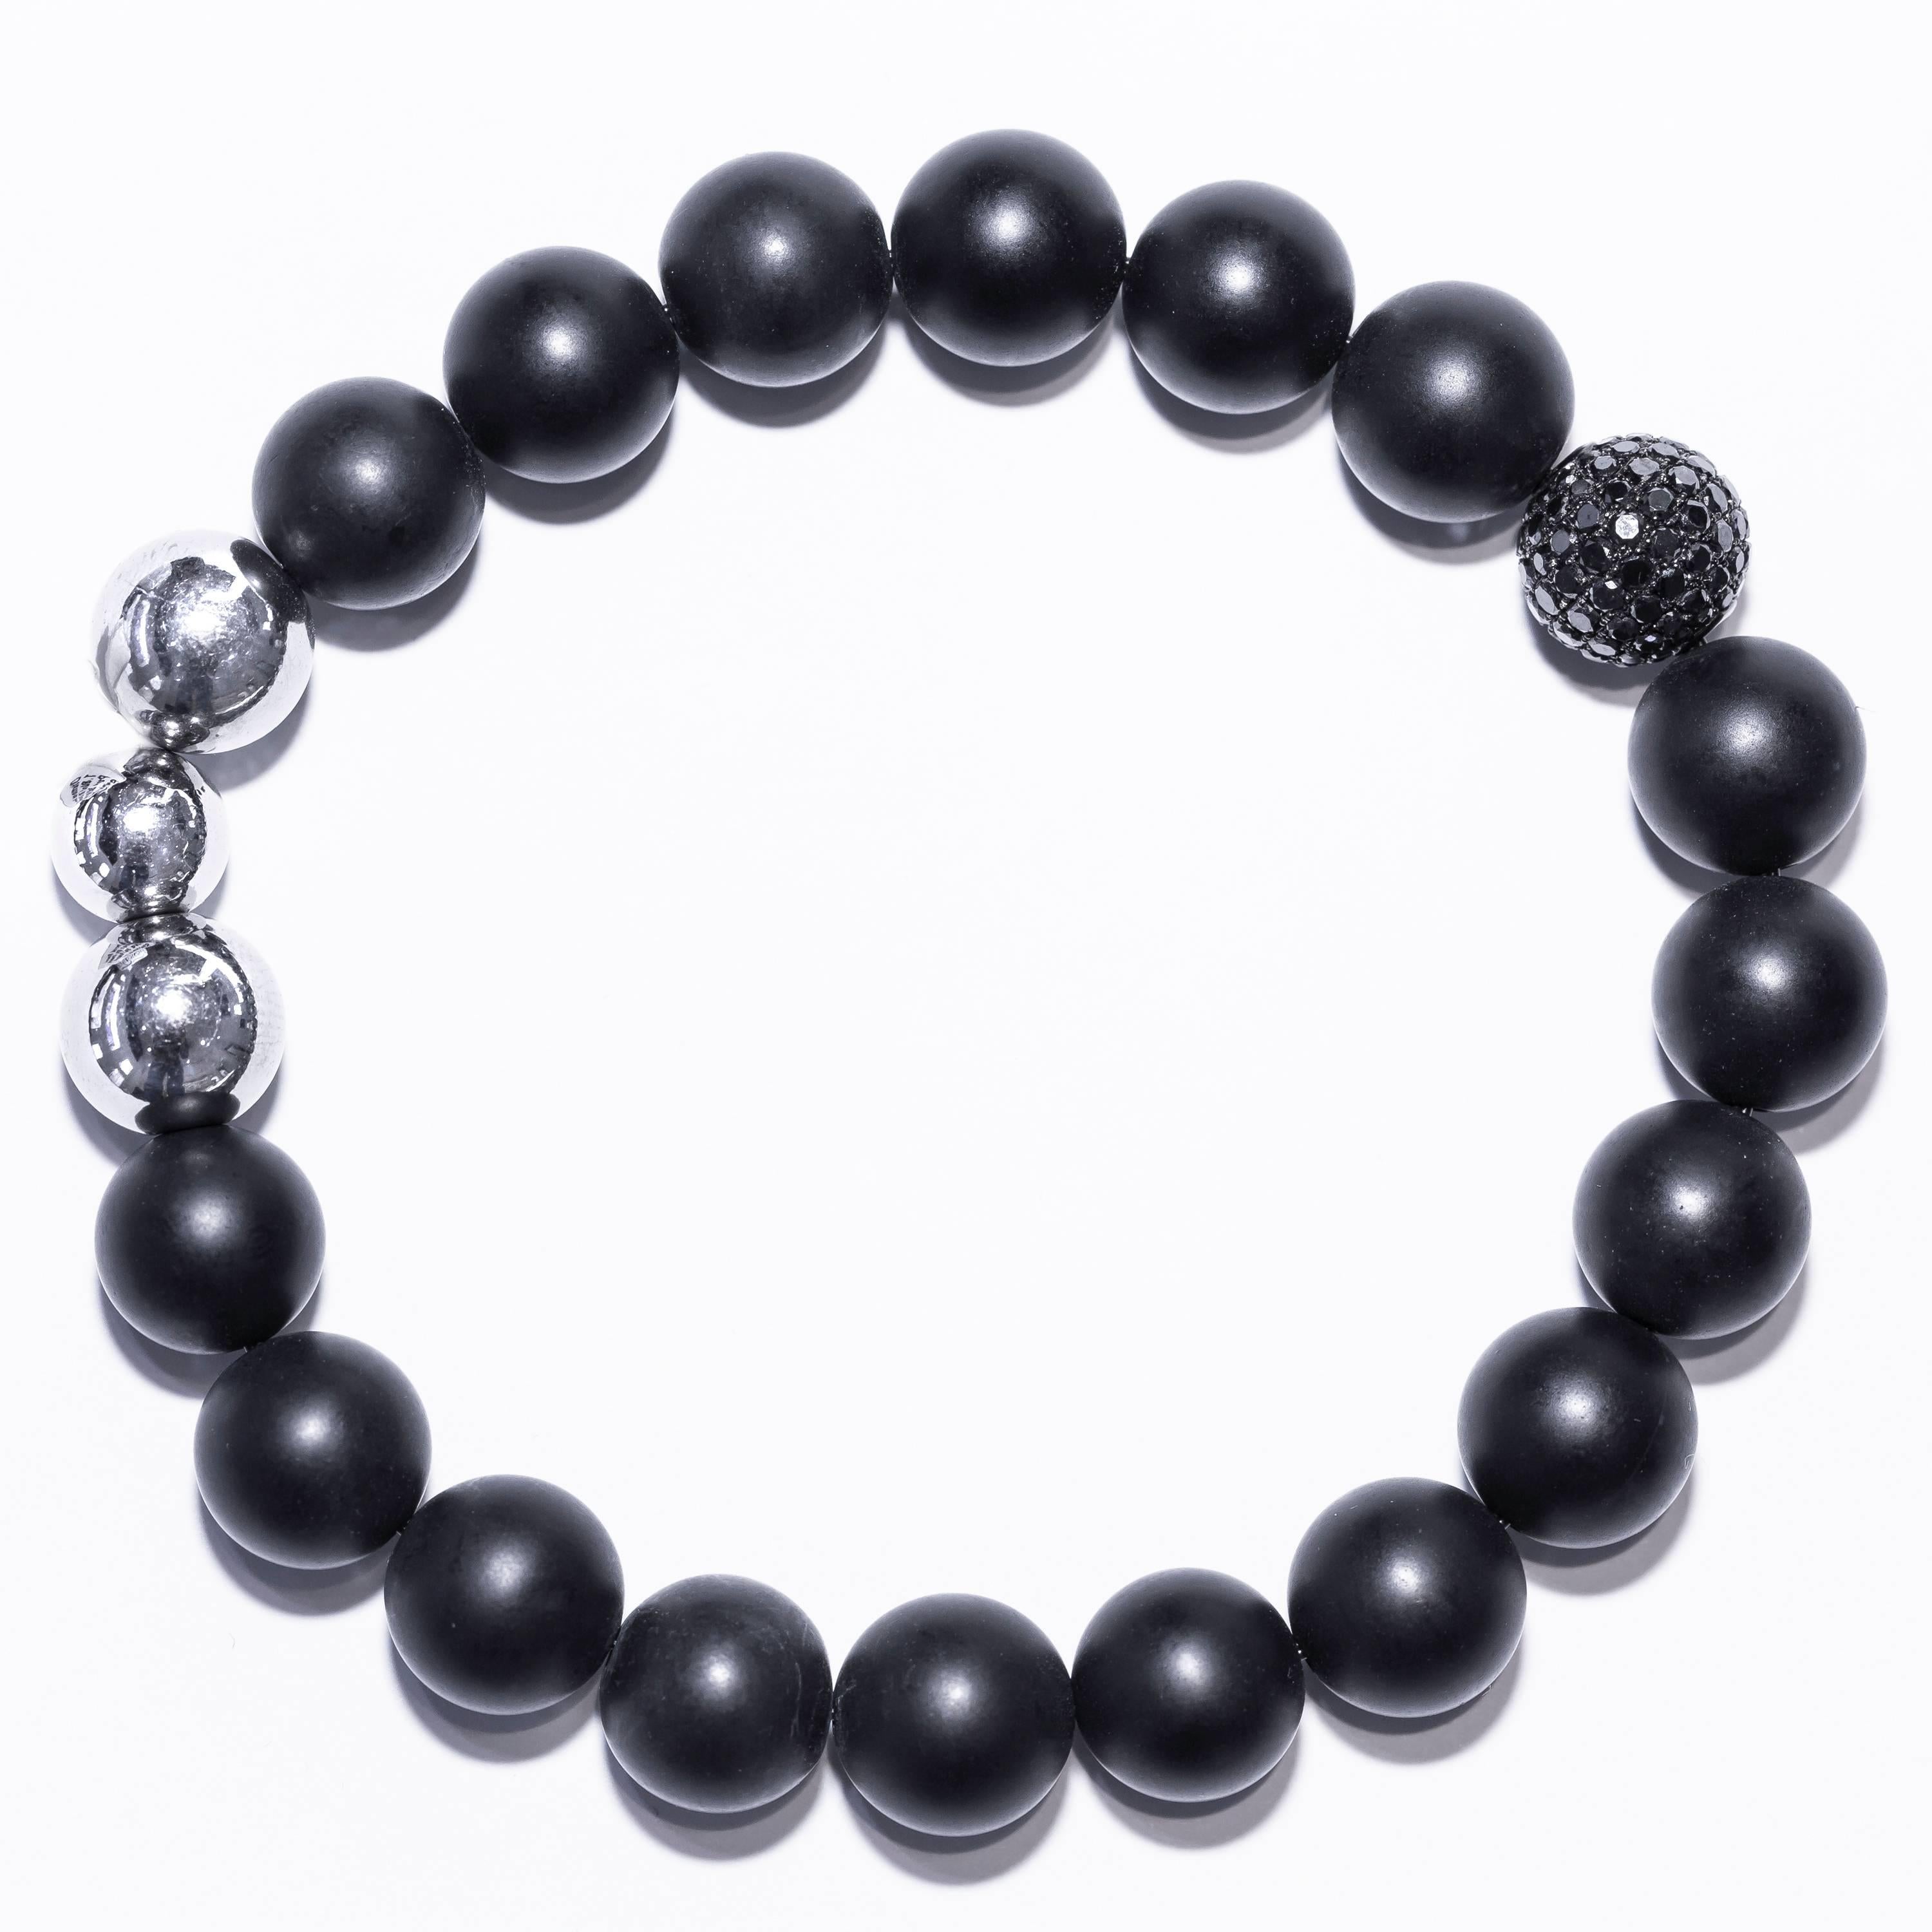 Ce bracelet comporte une perle en or blanc 18 carats sertie d'un diamant pavé, 3 perles en acier inoxydable et 17 perles en agate satinée noire mate. La taille convient de 17,78 cm à 21,59 cm (7,00 à 8,50 pouces). Bracelet contemporain et tendance